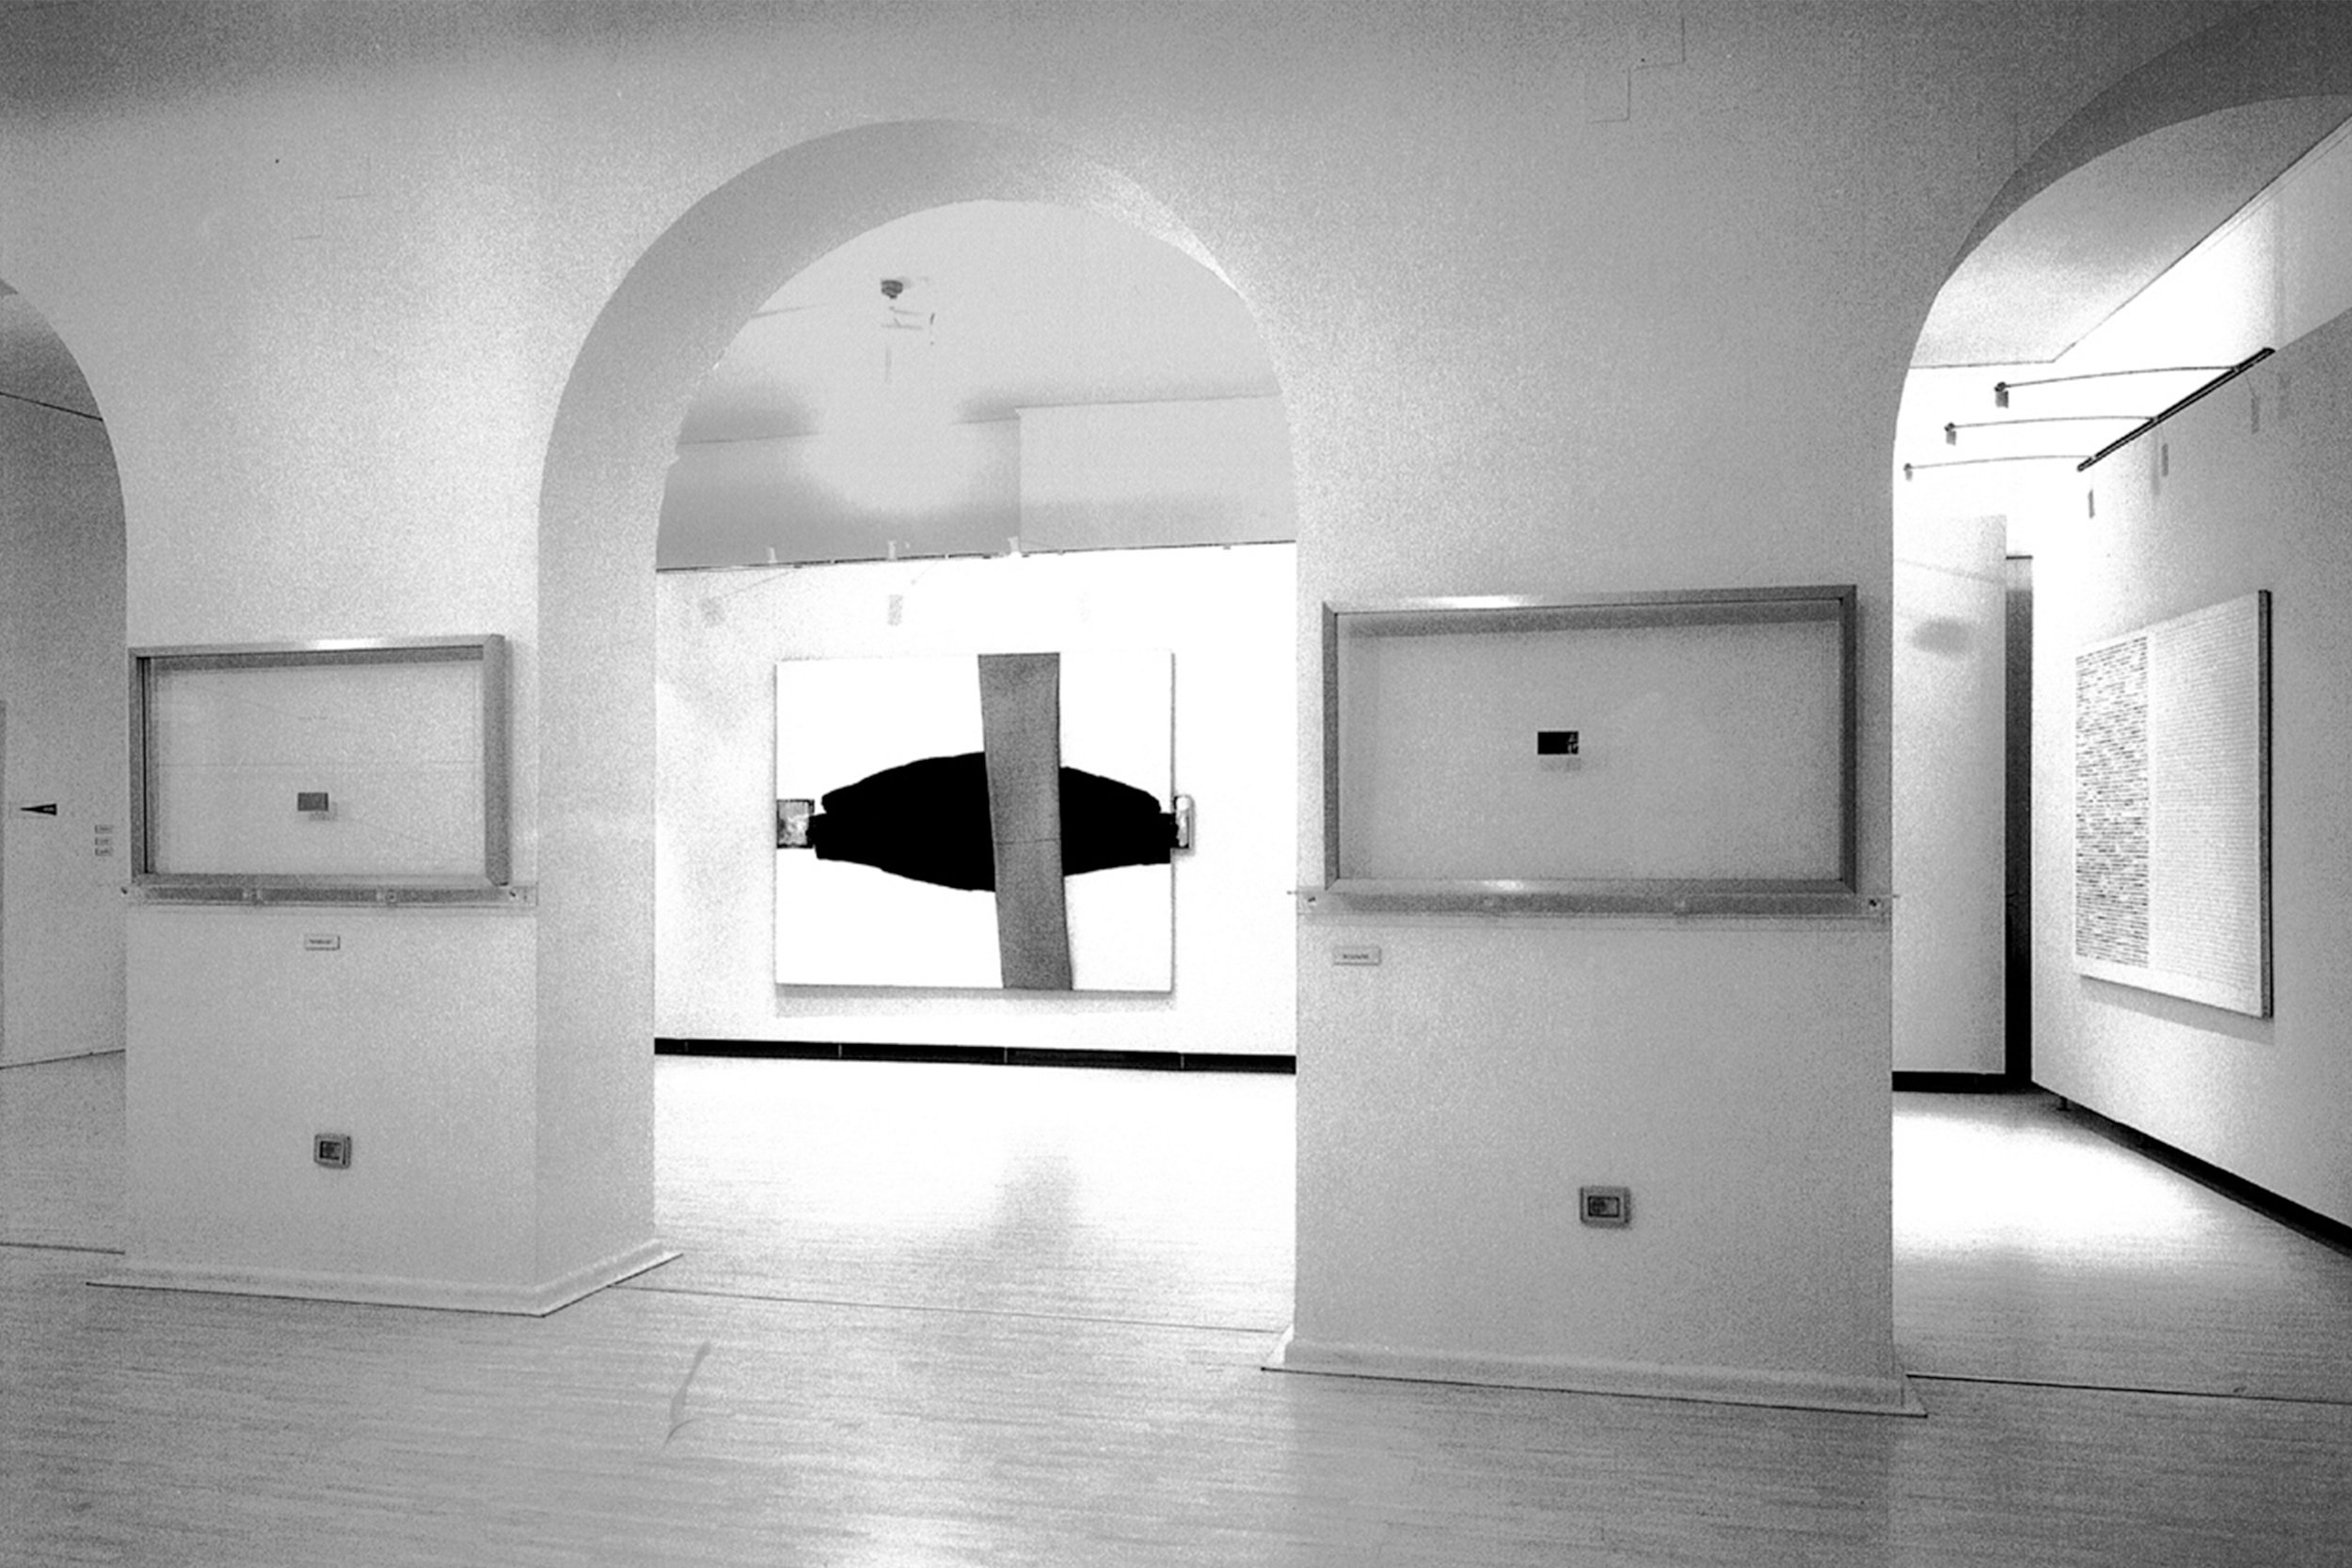 xCarlo Alfano, Sulla soglia, 7 April - 31 May 2001, Castel dell'ovo, Naples, ph. P. Avallone.jpg